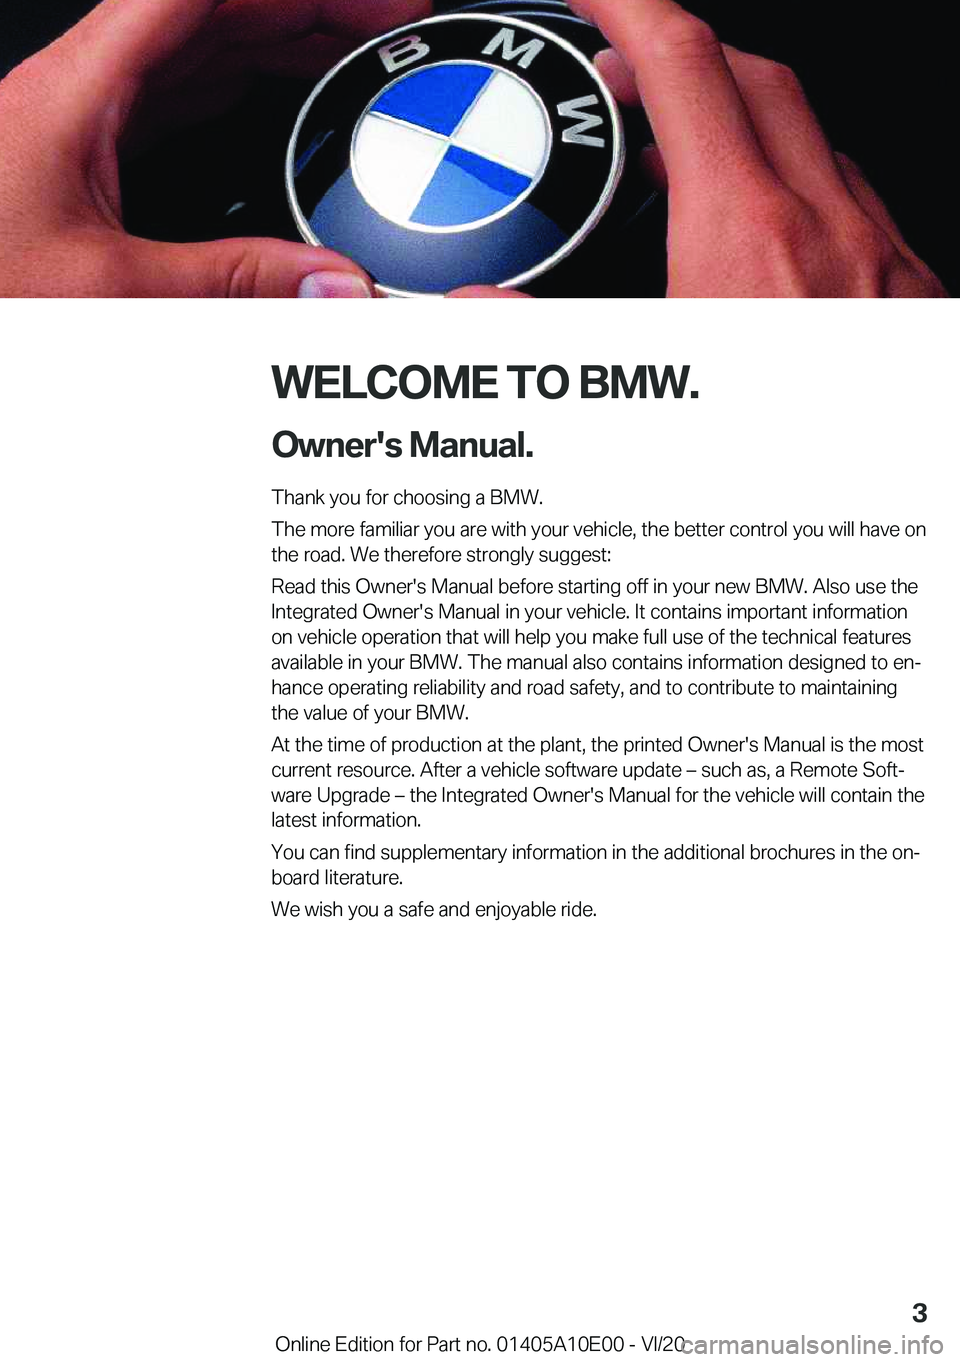 BMW X6 M 2021  Owners Manual �W�E�L�C�O�M�E��T�O��B�M�W�.�O�w�n�e�r�'�s��M�a�n�u�a�l�.
�T�h�a�n�k��y�o�u��f�o�r��c�h�o�o�s�i�n�g��a��B�M�W�.
�T�h�e��m�o�r�e��f�a�m�i�l�i�a�r��y�o�u��a�r�e��w�i�t�h��y�o�u�r��v�e